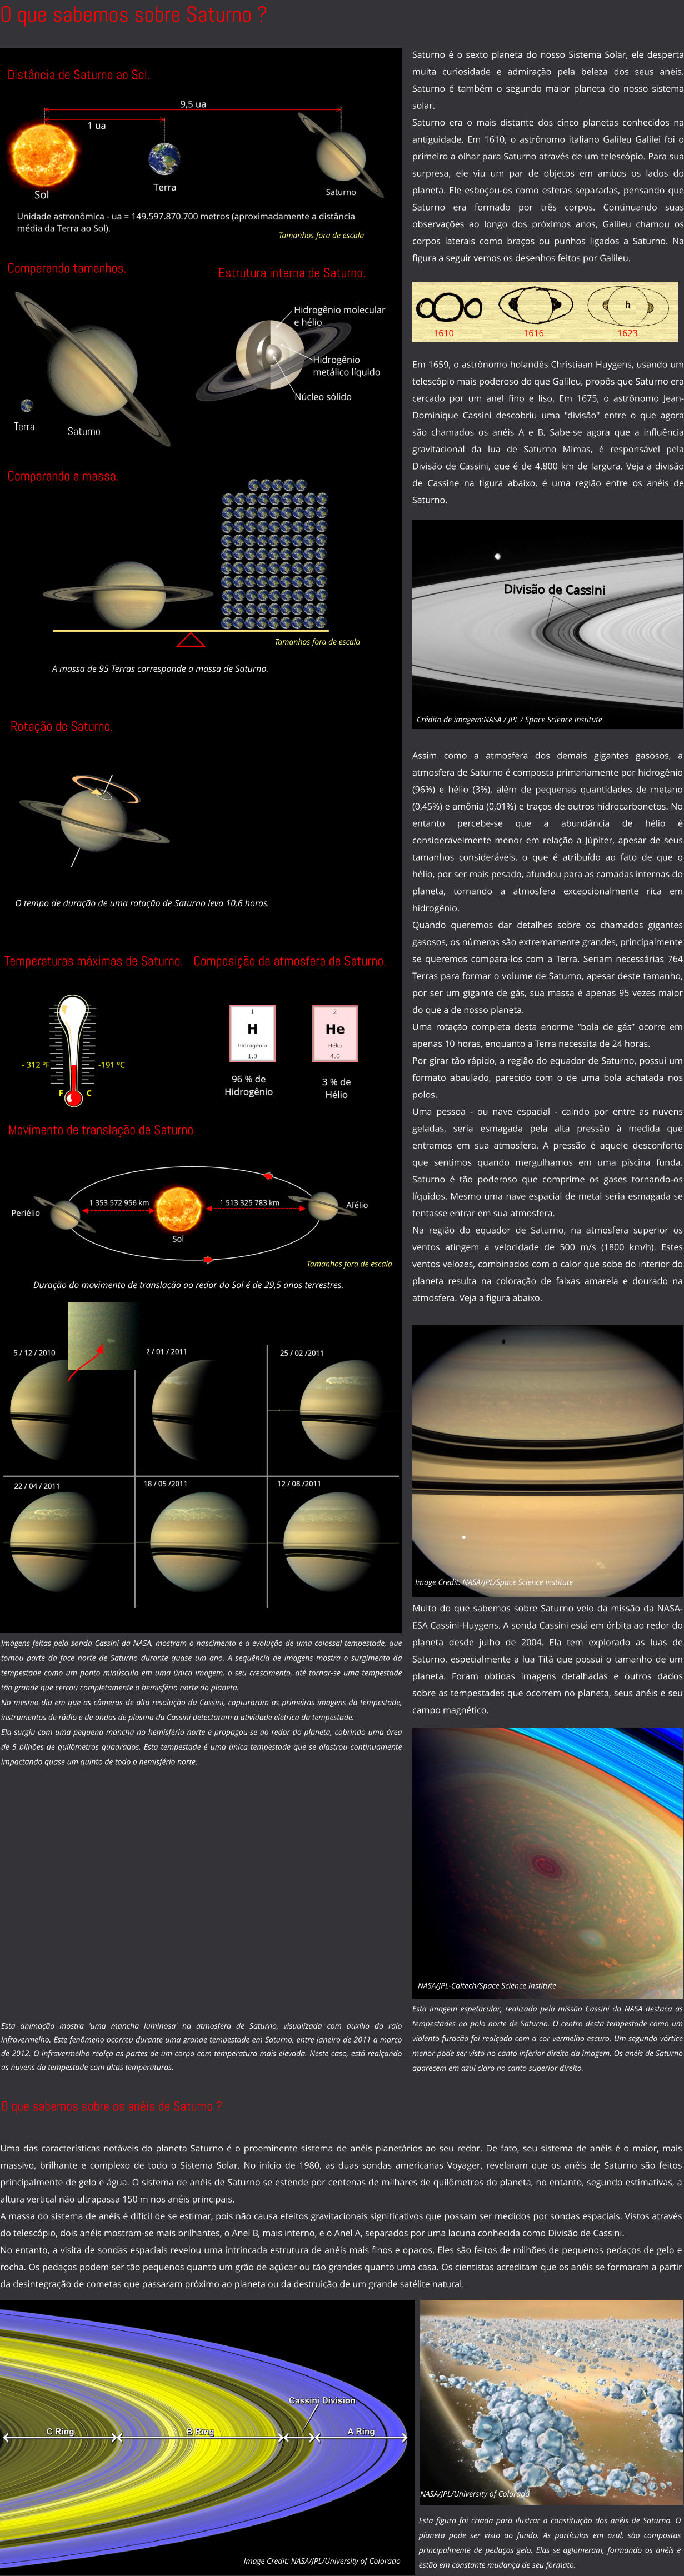 Terra Saturno Distância de Saturno ao Sol. Comparando tamanhos. Estrutura interna de Saturno. Comparando a massa. Temperaturas máximas de Saturno. O tempo de duração de uma rotação de Saturno leva 10,6 horas. Movimento de translação de Saturno Duração do movimento de translação ao redor do Sol é de 29,5 anos terrestres. A massa de 95 Terras corresponde a massa de Saturno. O que sabemos sobre Saturno ? Composição da atmosfera de Saturno. Tamanhos fora de escala Tamanhos fora de escala Esta animação mostra 'uma mancha luminosa' na atmosfera de Saturno, visualizada com auxílio do raio infravermelho. Este fenômeno ocorreu durante uma grande tempestade em Saturno, entre janeiro de 2011 a março de 2012. O infravermelho realça as partes de um corpo com temperatura mais elevada. Neste caso, está realçando as nuvens da tempestade com altas temperaturas.  Muito do que sabemos sobre Saturno veio da missão da NASA-ESA Cassini-Huygens. A sonda Cassini está em órbita ao redor do planeta desde julho de 2004. Ela tem explorado as luas de Saturno, especialmente a lua Titã que possui o tamanho de um planeta. Foram obtidas imagens detalhadas e outros dados sobre as tempestades que ocorrem no planeta, seus anéis e seu campo magnético.    Esta imagem espetacular, realizada pela missão Cassini da NASA destaca as tempestades no polo norte de Saturno. O centro desta tempestade como um violento furacão foi realçada com a cor vermelho escuro. Um segundo vórtice menor pode ser visto no canto inferior direito da imagem. Os anéis de Saturno aparecem em azul claro no canto superior direito. NASA/JPL-Caltech/Space Science Institute Imagens feitas pela sonda Cassini da NASA, mostram o nascimento e a evolução de uma colossal tempestade, que tomou parte da face norte de Saturno durante quase um ano. A sequência de imagens mostra o surgimento da tempestade como um ponto minúsculo em uma única imagem, o seu crescimento, até tornar-se uma tempestade tão grande que cercou completamente o hemisfério norte do planeta. No mesmo dia em que as câmeras de alta resolução da Cassini, capturaram as primeiras imagens da tempestade, instrumentos de rádio e de ondas de plasma da Cassini detectaram a atividade elétrica da tempestade.  Ela surgiu com uma pequena mancha no hemisfério norte e propagou-se ao redor do planeta, cobrindo uma área de 5 bilhões de quilômetros quadrados. Esta tempestade é uma única tempestade que se alastrou continuamente impactando quase um quinto de todo o hemisfério norte.  Esta figura foi criada para ilustrar a constituição dos anéis de Saturno. O planeta pode ser visto ao fundo. As partículas em azul, são compostas principalmente de pedaços gelo. Elas se aglomeram, formando os anéis e estão em constante mudança de seu formato.  NASA/JPL/University of Colorado Uma das características notáveis do planeta Saturno é o proeminente sistema de anéis planetários ao seu redor. De fato, seu sistema de anéis é o maior, mais massivo, brilhante e complexo de todo o Sistema Solar. No início de 1980, as duas sondas americanas Voyager, revelaram que os anéis de Saturno são feitos principalmente de gelo e água. O sistema de anéis de Saturno se estende por centenas de milhares de quilômetros do planeta, no entanto, segundo estimativas, a altura vertical não ultrapassa 150 m nos anéis principais.  A massa do sistema de anéis é difícil de se estimar, pois não causa efeitos gravitacionais significativos que possam ser medidos por sondas espaciais. Vistos através do telescópio, dois anéis mostram-se mais brilhantes, o Anel B, mais interno, e o Anel A, separados por uma lacuna conhecida como Divisão de Cassini.  No entanto, a visita de sondas espaciais revelou uma intrincada estrutura de anéis mais finos e opacos. Eles são feitos de milhões de pequenos pedaços de gelo e rocha. Os pedaços podem ser tão pequenos quanto um grão de açúcar ou tão grandes quanto uma casa. Os cientistas acreditam que os anéis se formaram a partir da desintegração de cometas que passaram próximo ao planeta ou da destruição de um grande satélite natural.  O que sabemos sobre os anéis de Saturno ? Saturno é o sexto planeta do nosso Sistema Solar, ele desperta muita curiosidade e admiração pela beleza dos seus anéis. Saturno é também o segundo maior planeta do nosso sistema solar. Saturno era o mais distante dos cinco planetas conhecidos na antiguidade. Em 1610, o astrônomo italiano Galileu Galilei foi o primeiro a olhar para Saturno através de um telescópio. Para sua surpresa, ele viu um par de objetos em ambos os lados do planeta. Ele esboçou-os como esferas separadas, pensando que Saturno era formado por três corpos. Continuando suas observações ao longo dos próximos anos, Galileu chamou os corpos laterais como braços ou punhos ligados a Saturno. Na figura a seguir vemos os desenhos feitos por Galileu.   Em 1659, o astrônomo holandês Christiaan Huygens, usando um telescópio mais poderoso do que Galileu, propôs que Saturno era cercado por um anel fino e liso. Em 1675, o astrônomo Jean-Dominique Cassini descobriu uma "divisão" entre o que agora são chamados os anéis A e B. Sabe-se agora que a influência gravitacional da lua de Saturno Mimas, é responsável pela Divisão de Cassini, que é de 4.800 km de largura. Veja a divisão de Cassine na figura abaixo, é uma região entre os anéis de Saturno.  1610 1616 1623 Crédito de imagem:NASA / JPL / Space Science Institute Assim como a atmosfera dos demais gigantes gasosos, a atmosfera de Saturno é composta primariamente por hidrogênio (96%) e hélio (3%), além de pequenas quantidades de metano (0,45%) e amônia (0,01%) e traços de outros hidrocarbonetos. No entanto percebe-se que a abundância de hélio é consideravelmente menor em relação a Júpiter, apesar de seus tamanhos consideráveis, o que é atribuído ao fato de que o hélio, por ser mais pesado, afundou para as camadas internas do planeta, tornando a atmosfera excepcionalmente rica em hidrogênio.  Quando queremos dar detalhes sobre os chamados gigantes gasosos, os números são extremamente grandes, principalmente se queremos compara-los com a Terra. Seriam necessárias 764 Terras para formar o volume de Saturno, apesar deste tamanho, por ser um gigante de gás, sua massa é apenas 95 vezes maior do que a de nosso planeta. Uma rotação completa desta enorme “bola de gás” ocorre em apenas 10 horas, enquanto a Terra necessita de 24 horas.  Por girar tão rápido, a região do equador de Saturno, possui um formato abaulado, parecido com o de uma bola achatada nos polos. Uma pessoa - ou nave espacial - caindo por entre as nuvens geladas, seria esmagada pela alta pressão à medida que entramos em sua atmosfera. A pressão é aquele desconforto que sentimos quando mergulhamos em uma piscina funda. Saturno é tão poderoso que comprime os gases tornando-os líquidos. Mesmo uma nave espacial de metal seria esmagada se tentasse entrar em sua atmosfera. Na região do equador de Saturno, na atmosfera superior os ventos atingem a velocidade de 500 m/s (1800 km/h). Estes ventos velozes, combinados com o calor que sobe do interior do planeta resulta na coloração de faixas amarela e dourado na atmosfera. Veja a figura abaixo.    Image Credit: NASA/JPL/Space Science Institute Rotação de Saturno. Tamanhos fora de escala Image Credit: NASA/JPL/University of Colorado